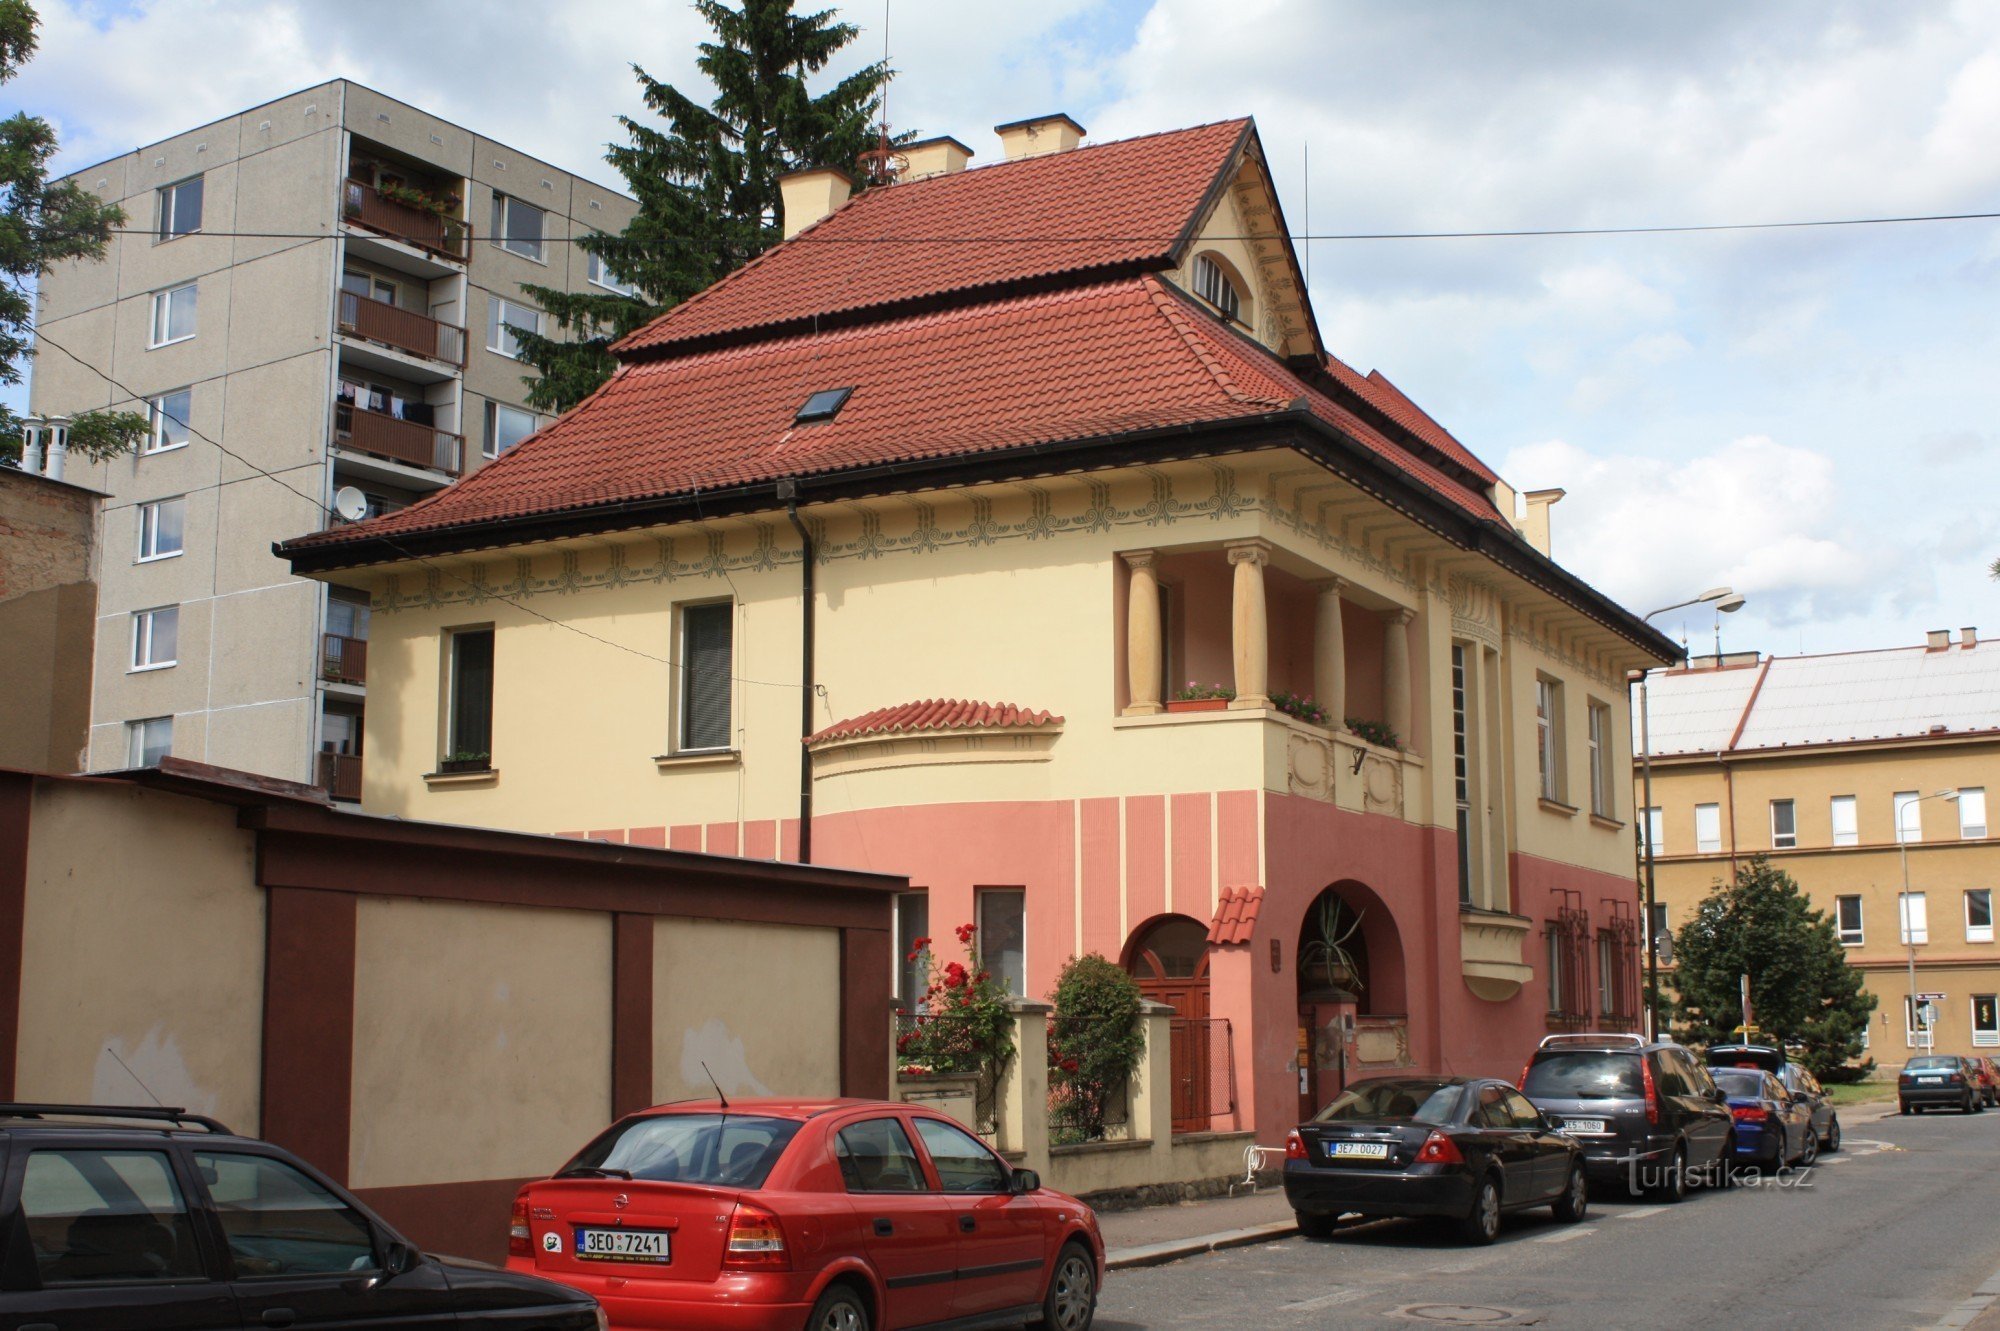 Chrudim - Kotěr's villa